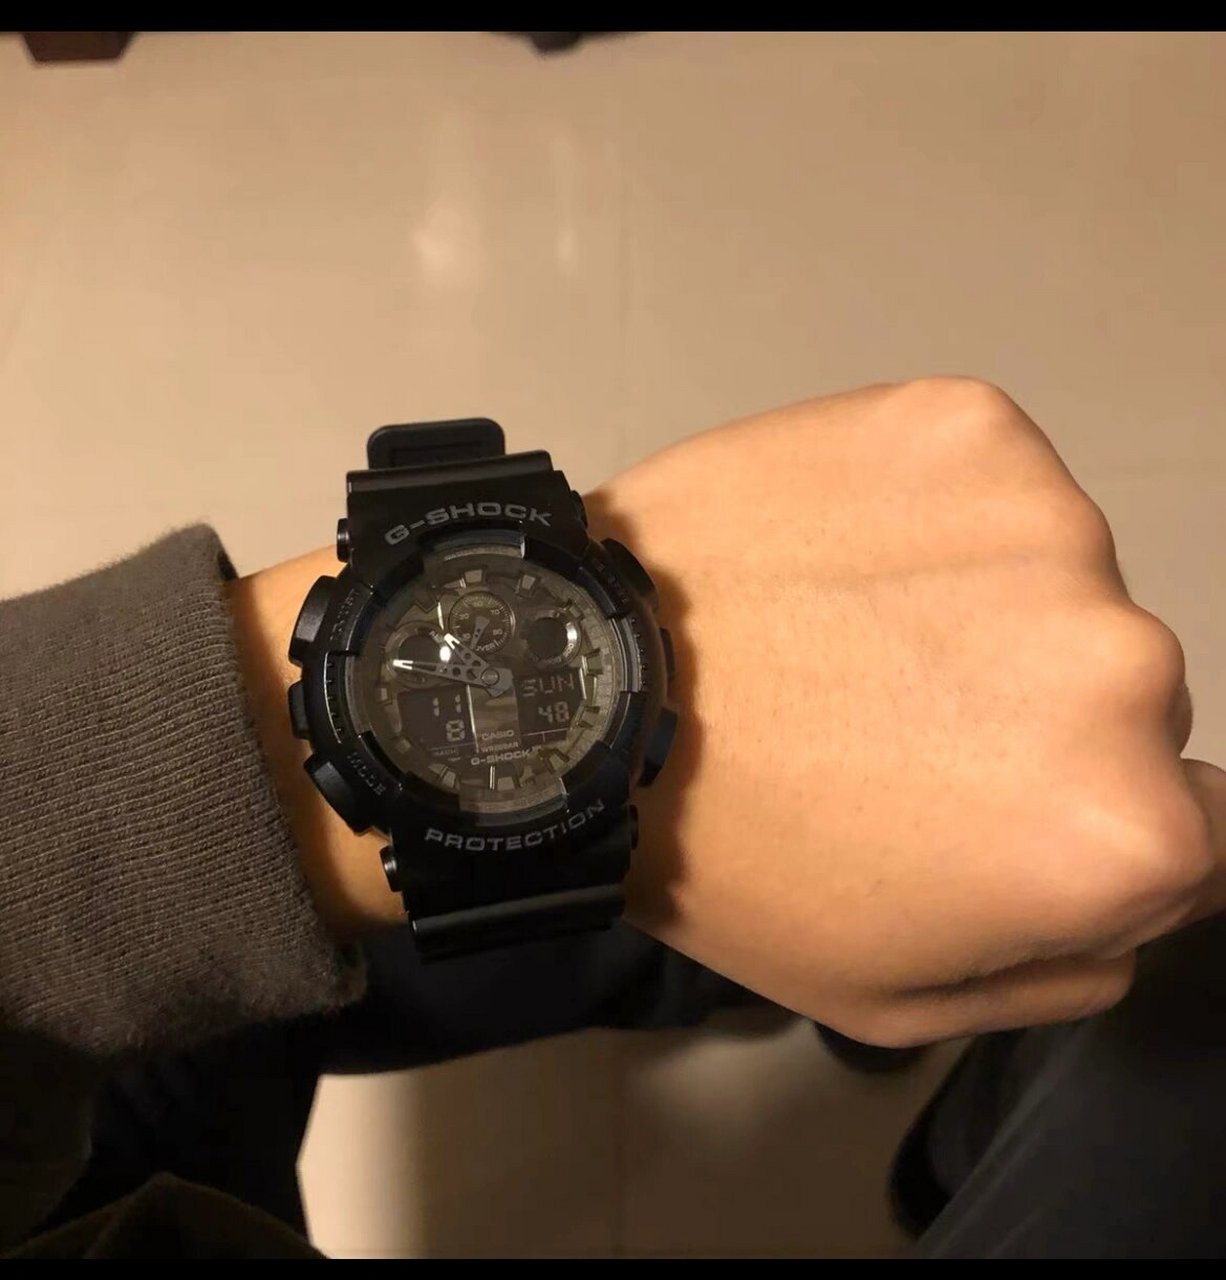 刘德华同款手表卡西欧图片